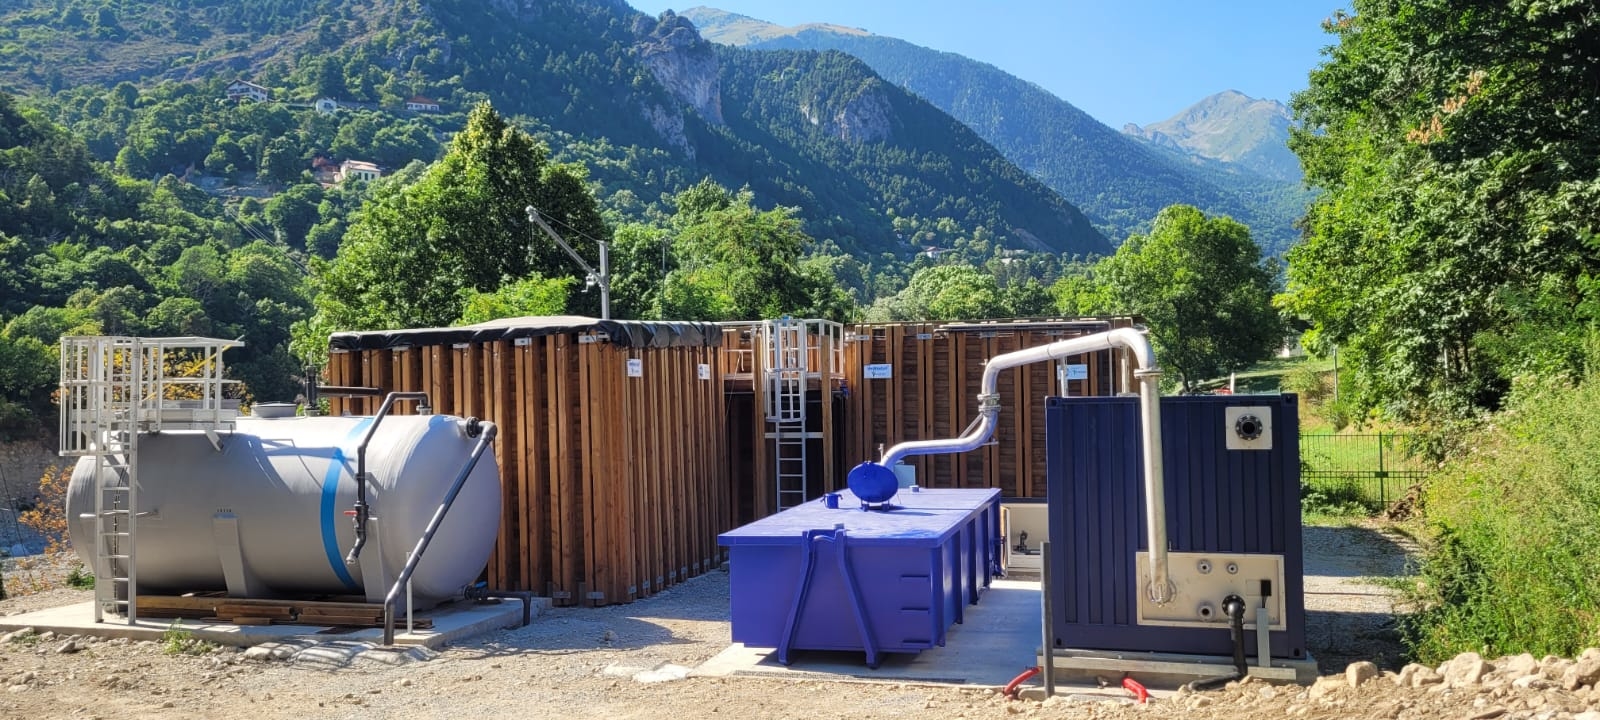 Visuel de Waste Water Box - Série Bois Station d’épuration compacte fabriquée avec structure en bois et complexe d’étanchéité de géomembrane